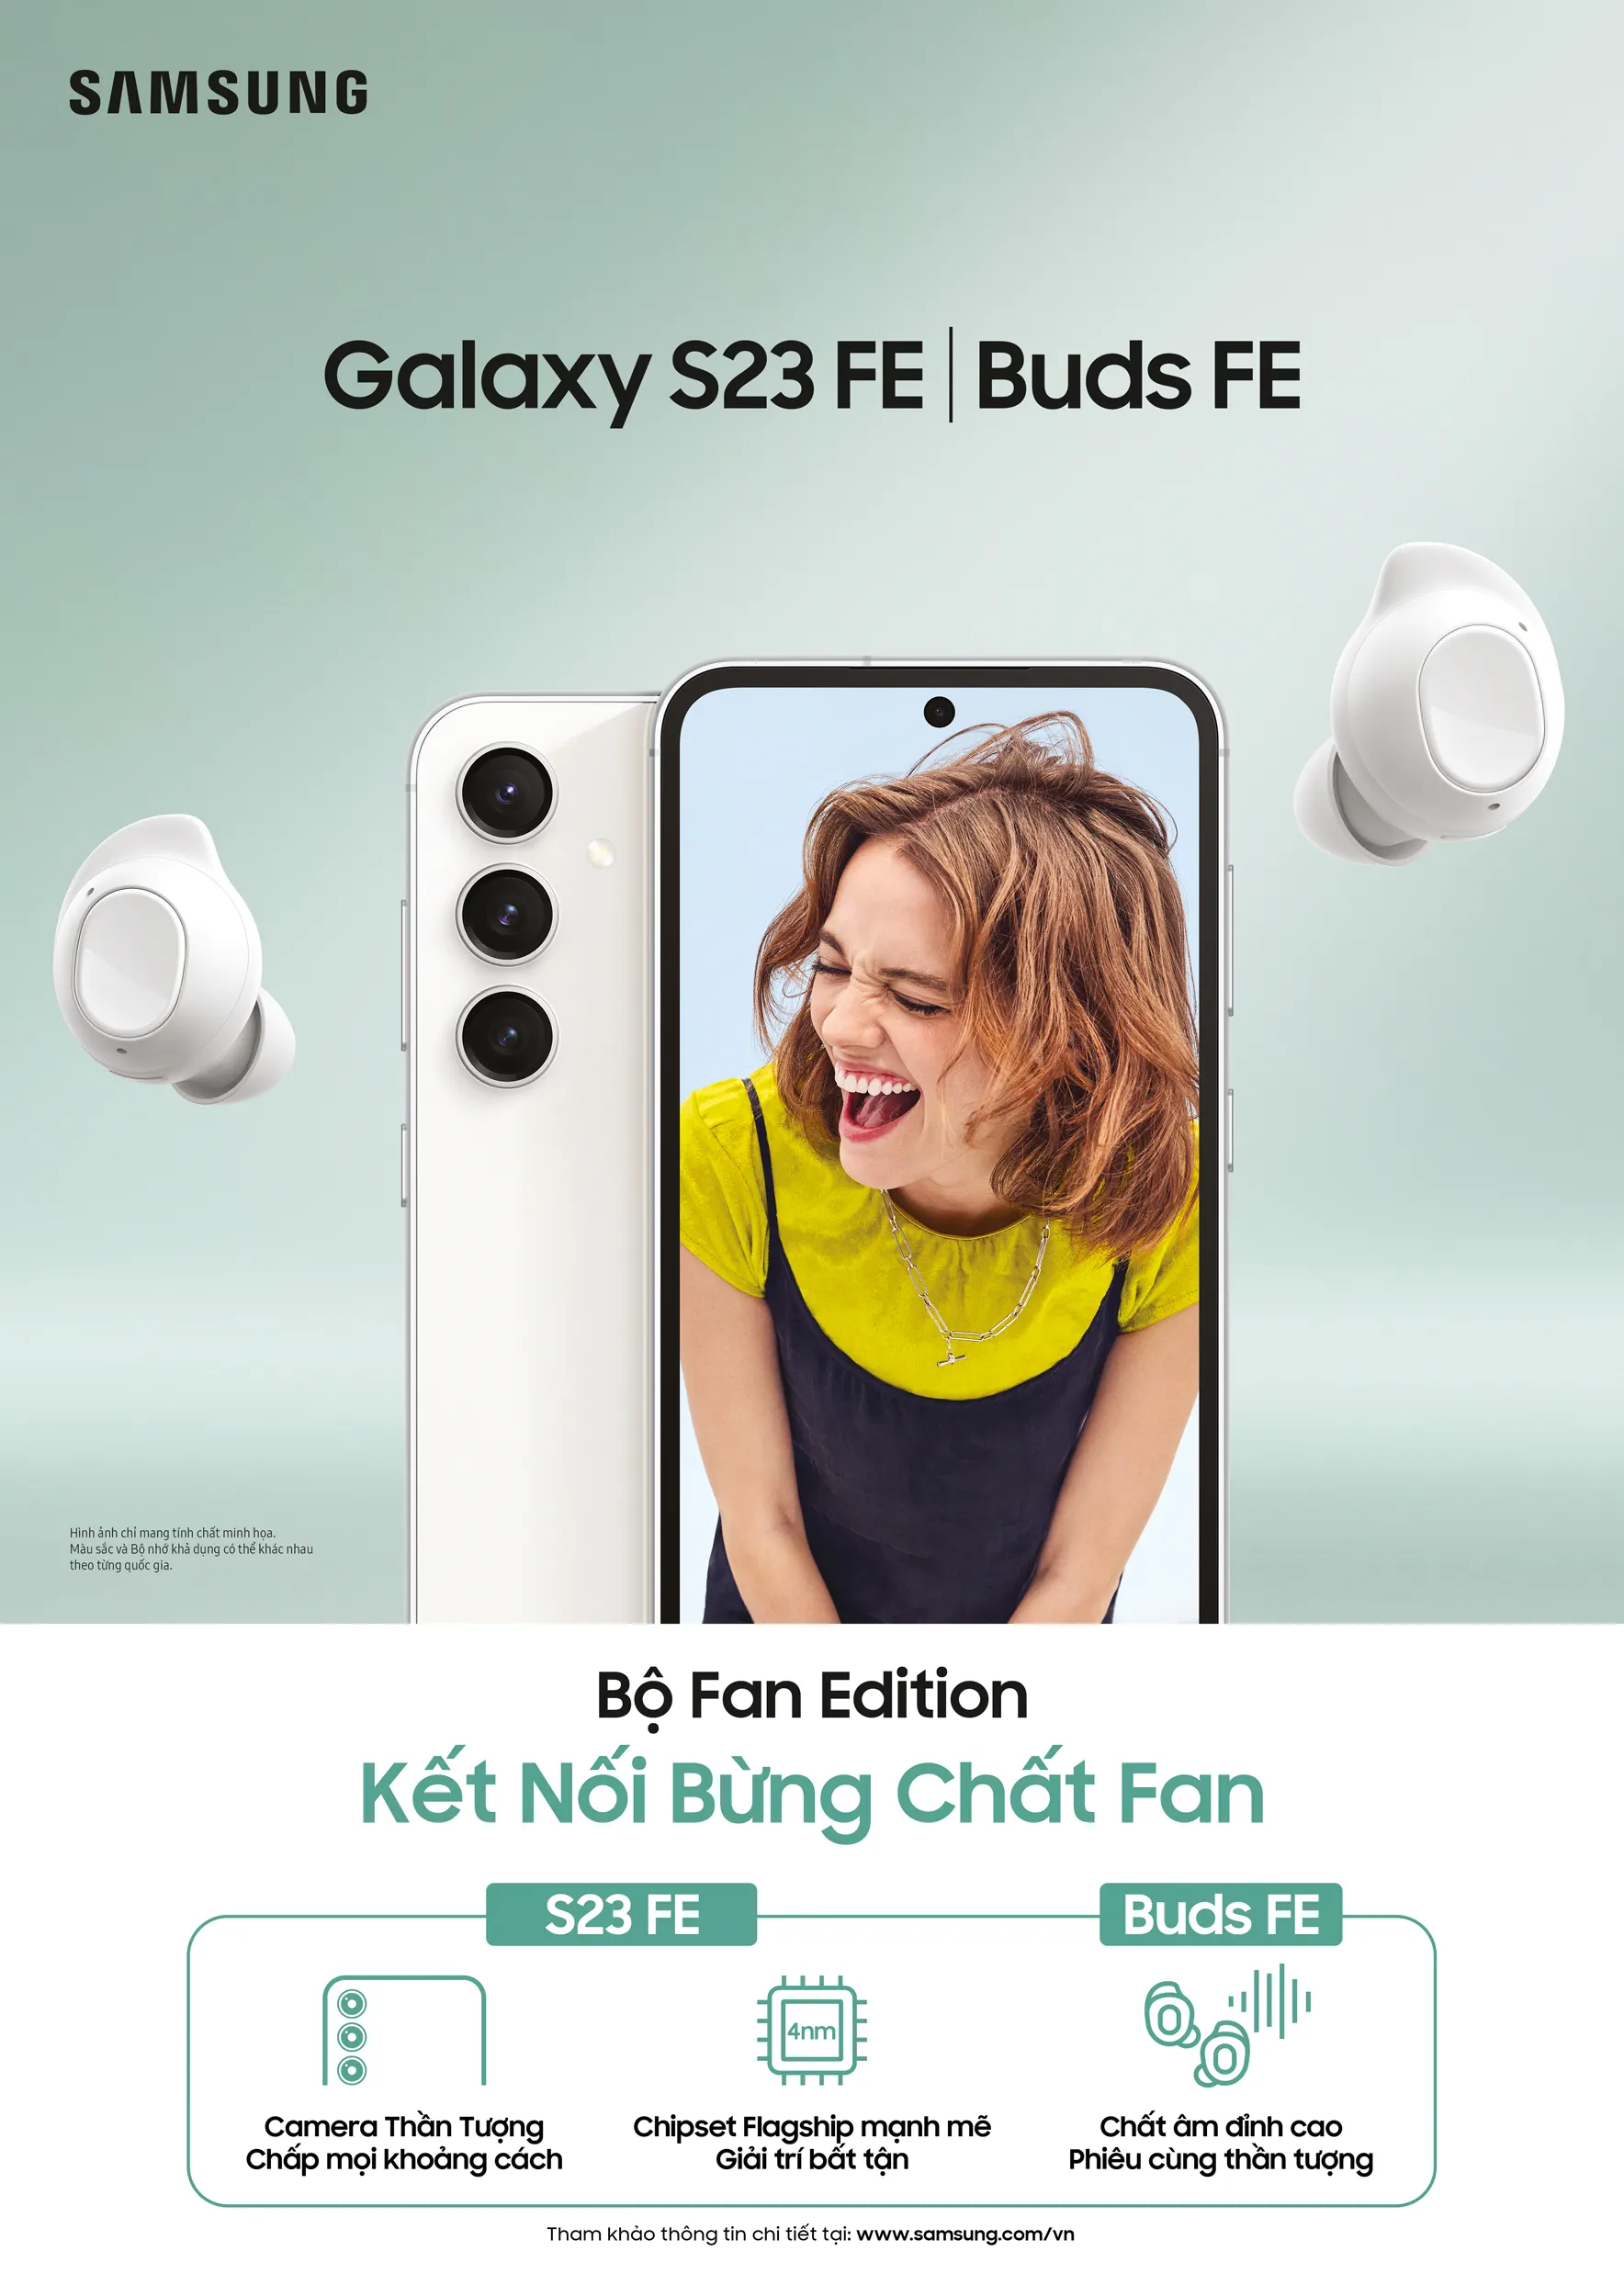 Samsung ra mắt bộ sản phẩm Fan Edition, mức giá cực hấp dẫn khi mua S23 FE và Buds FE tại Thế Giới Di Động